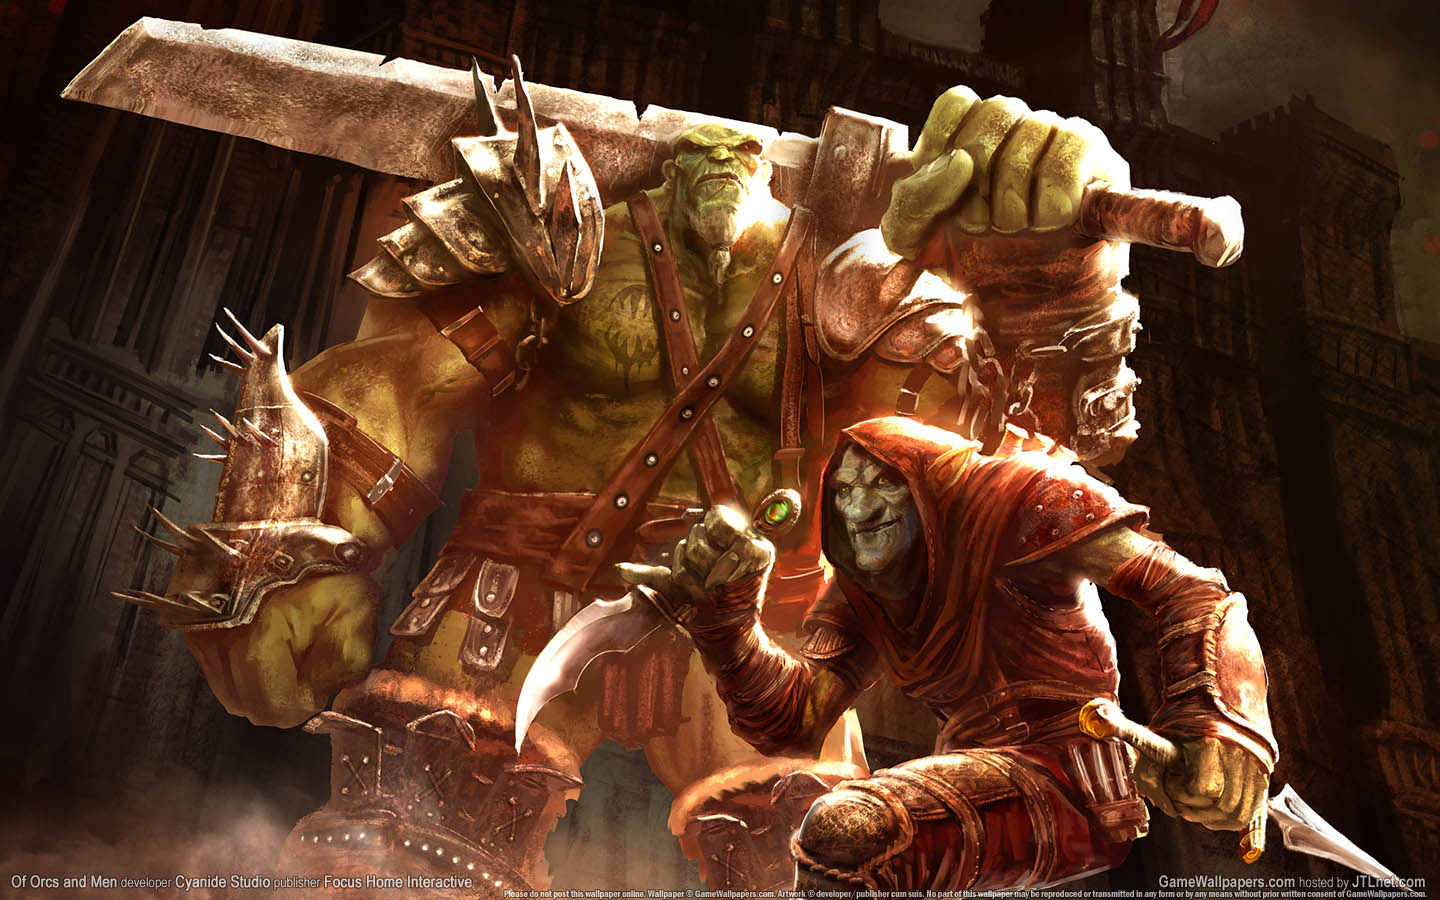 Of Orcs and Men fond d'cran 01 1440x900